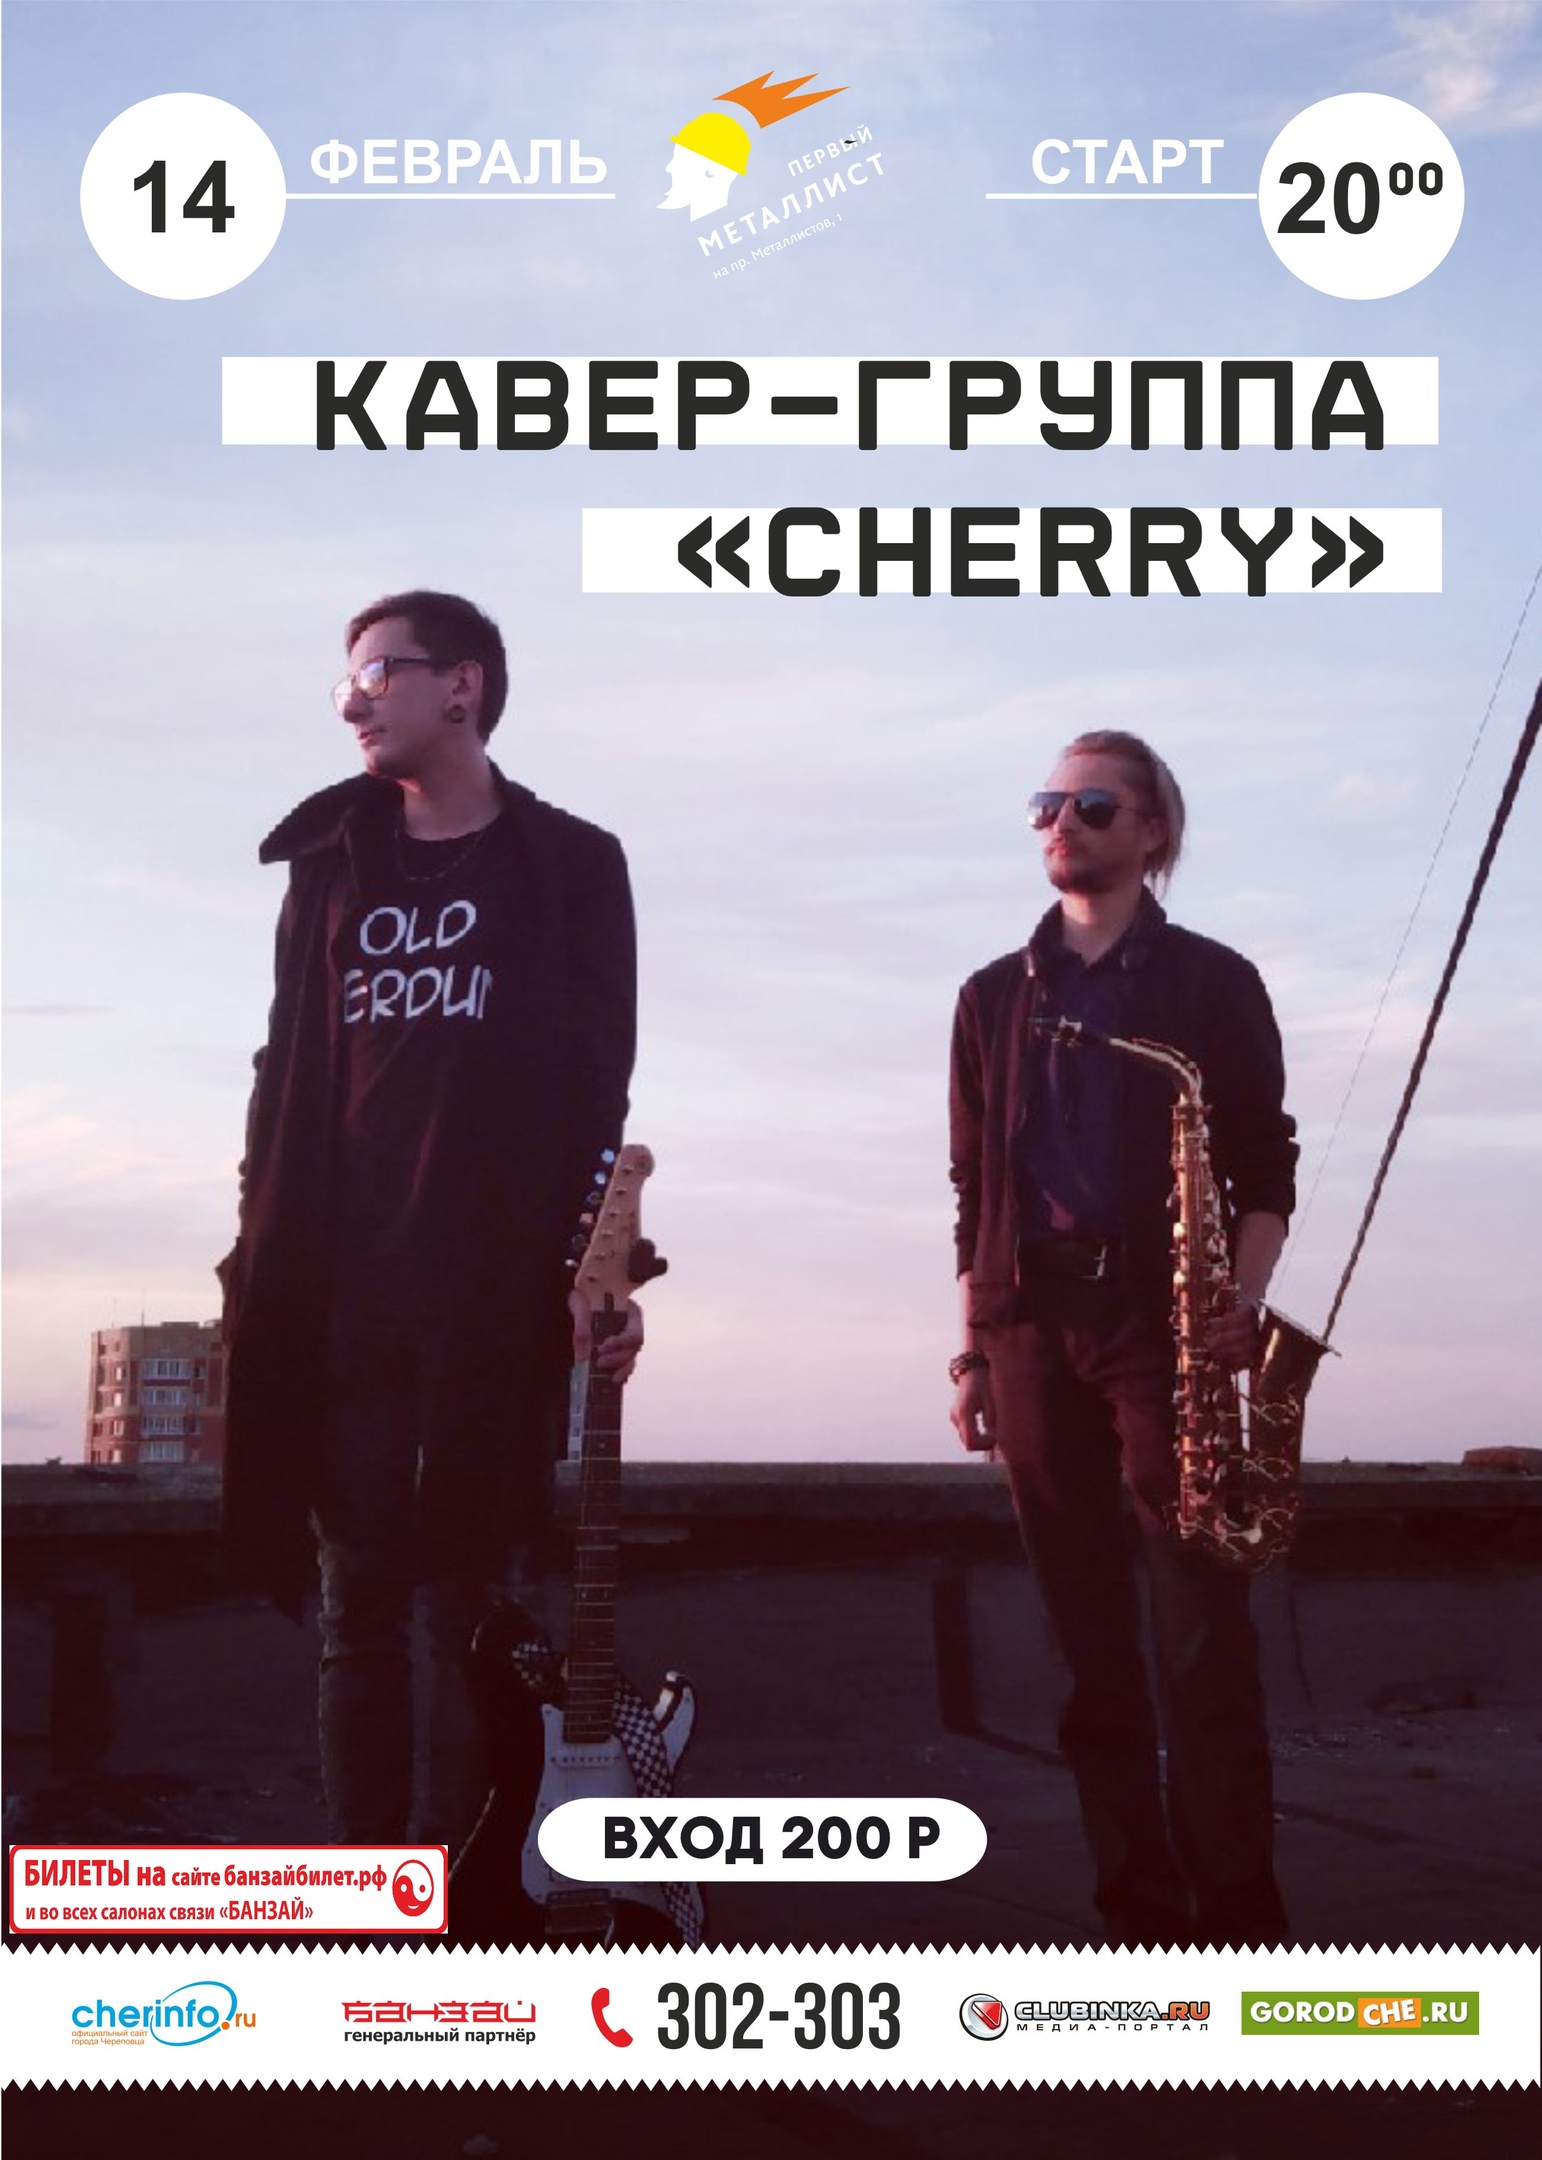 Кавер-группа "Cherry" I 14.02.2020